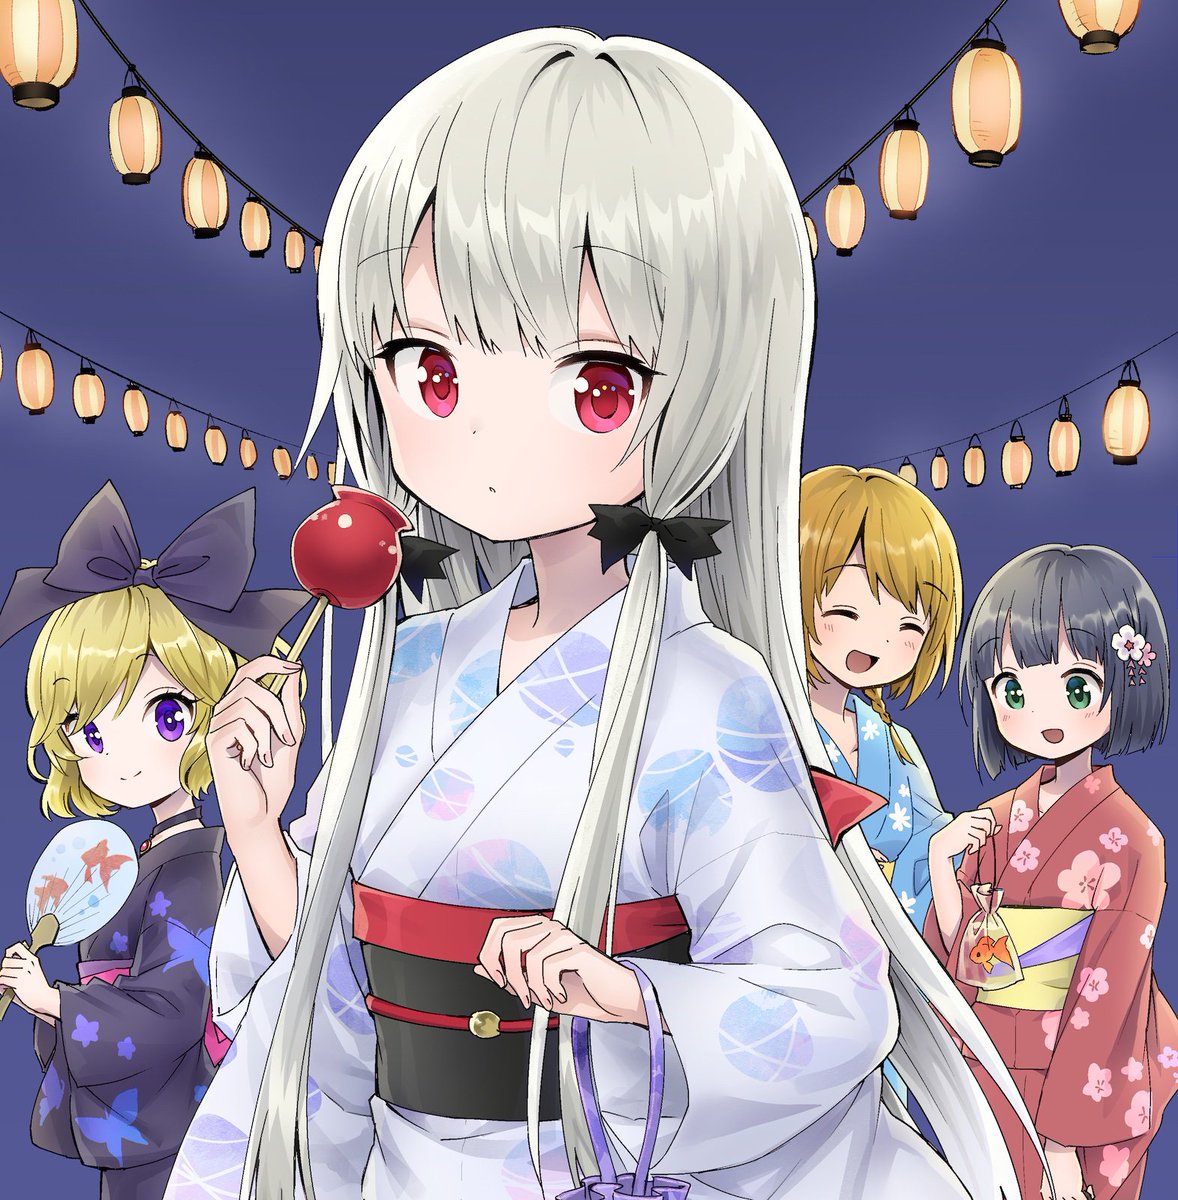 multiple girls fireworks kimono japanese clothes 2girls purple eyes obi  illustration images